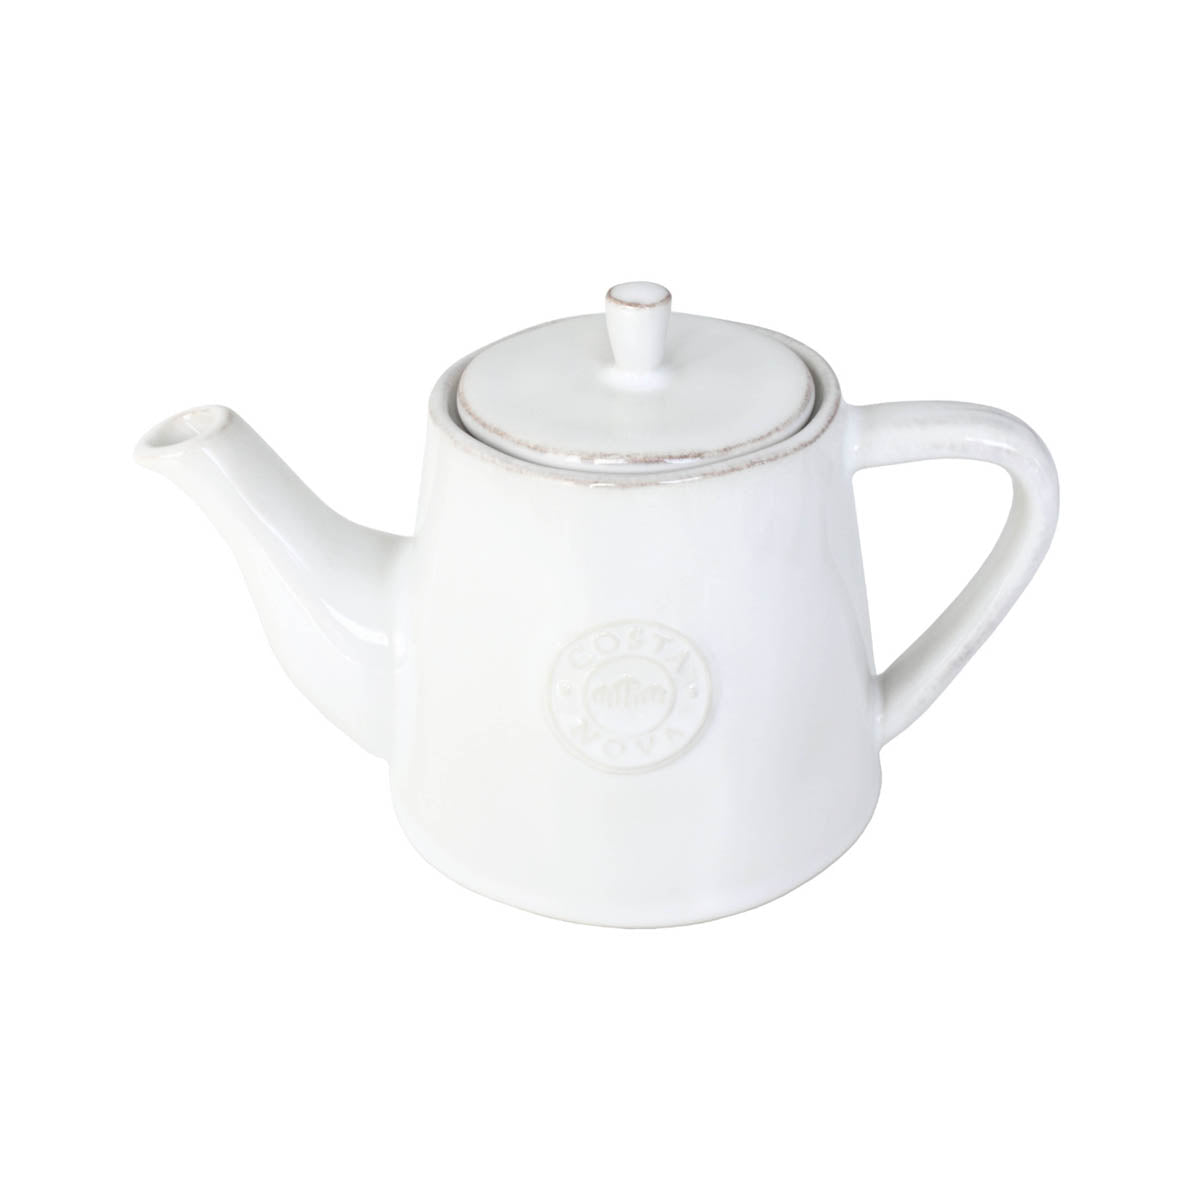 301242 Costa Nova Nova White Teapot 510ml  Tomkin Australia Hospitality Supplies